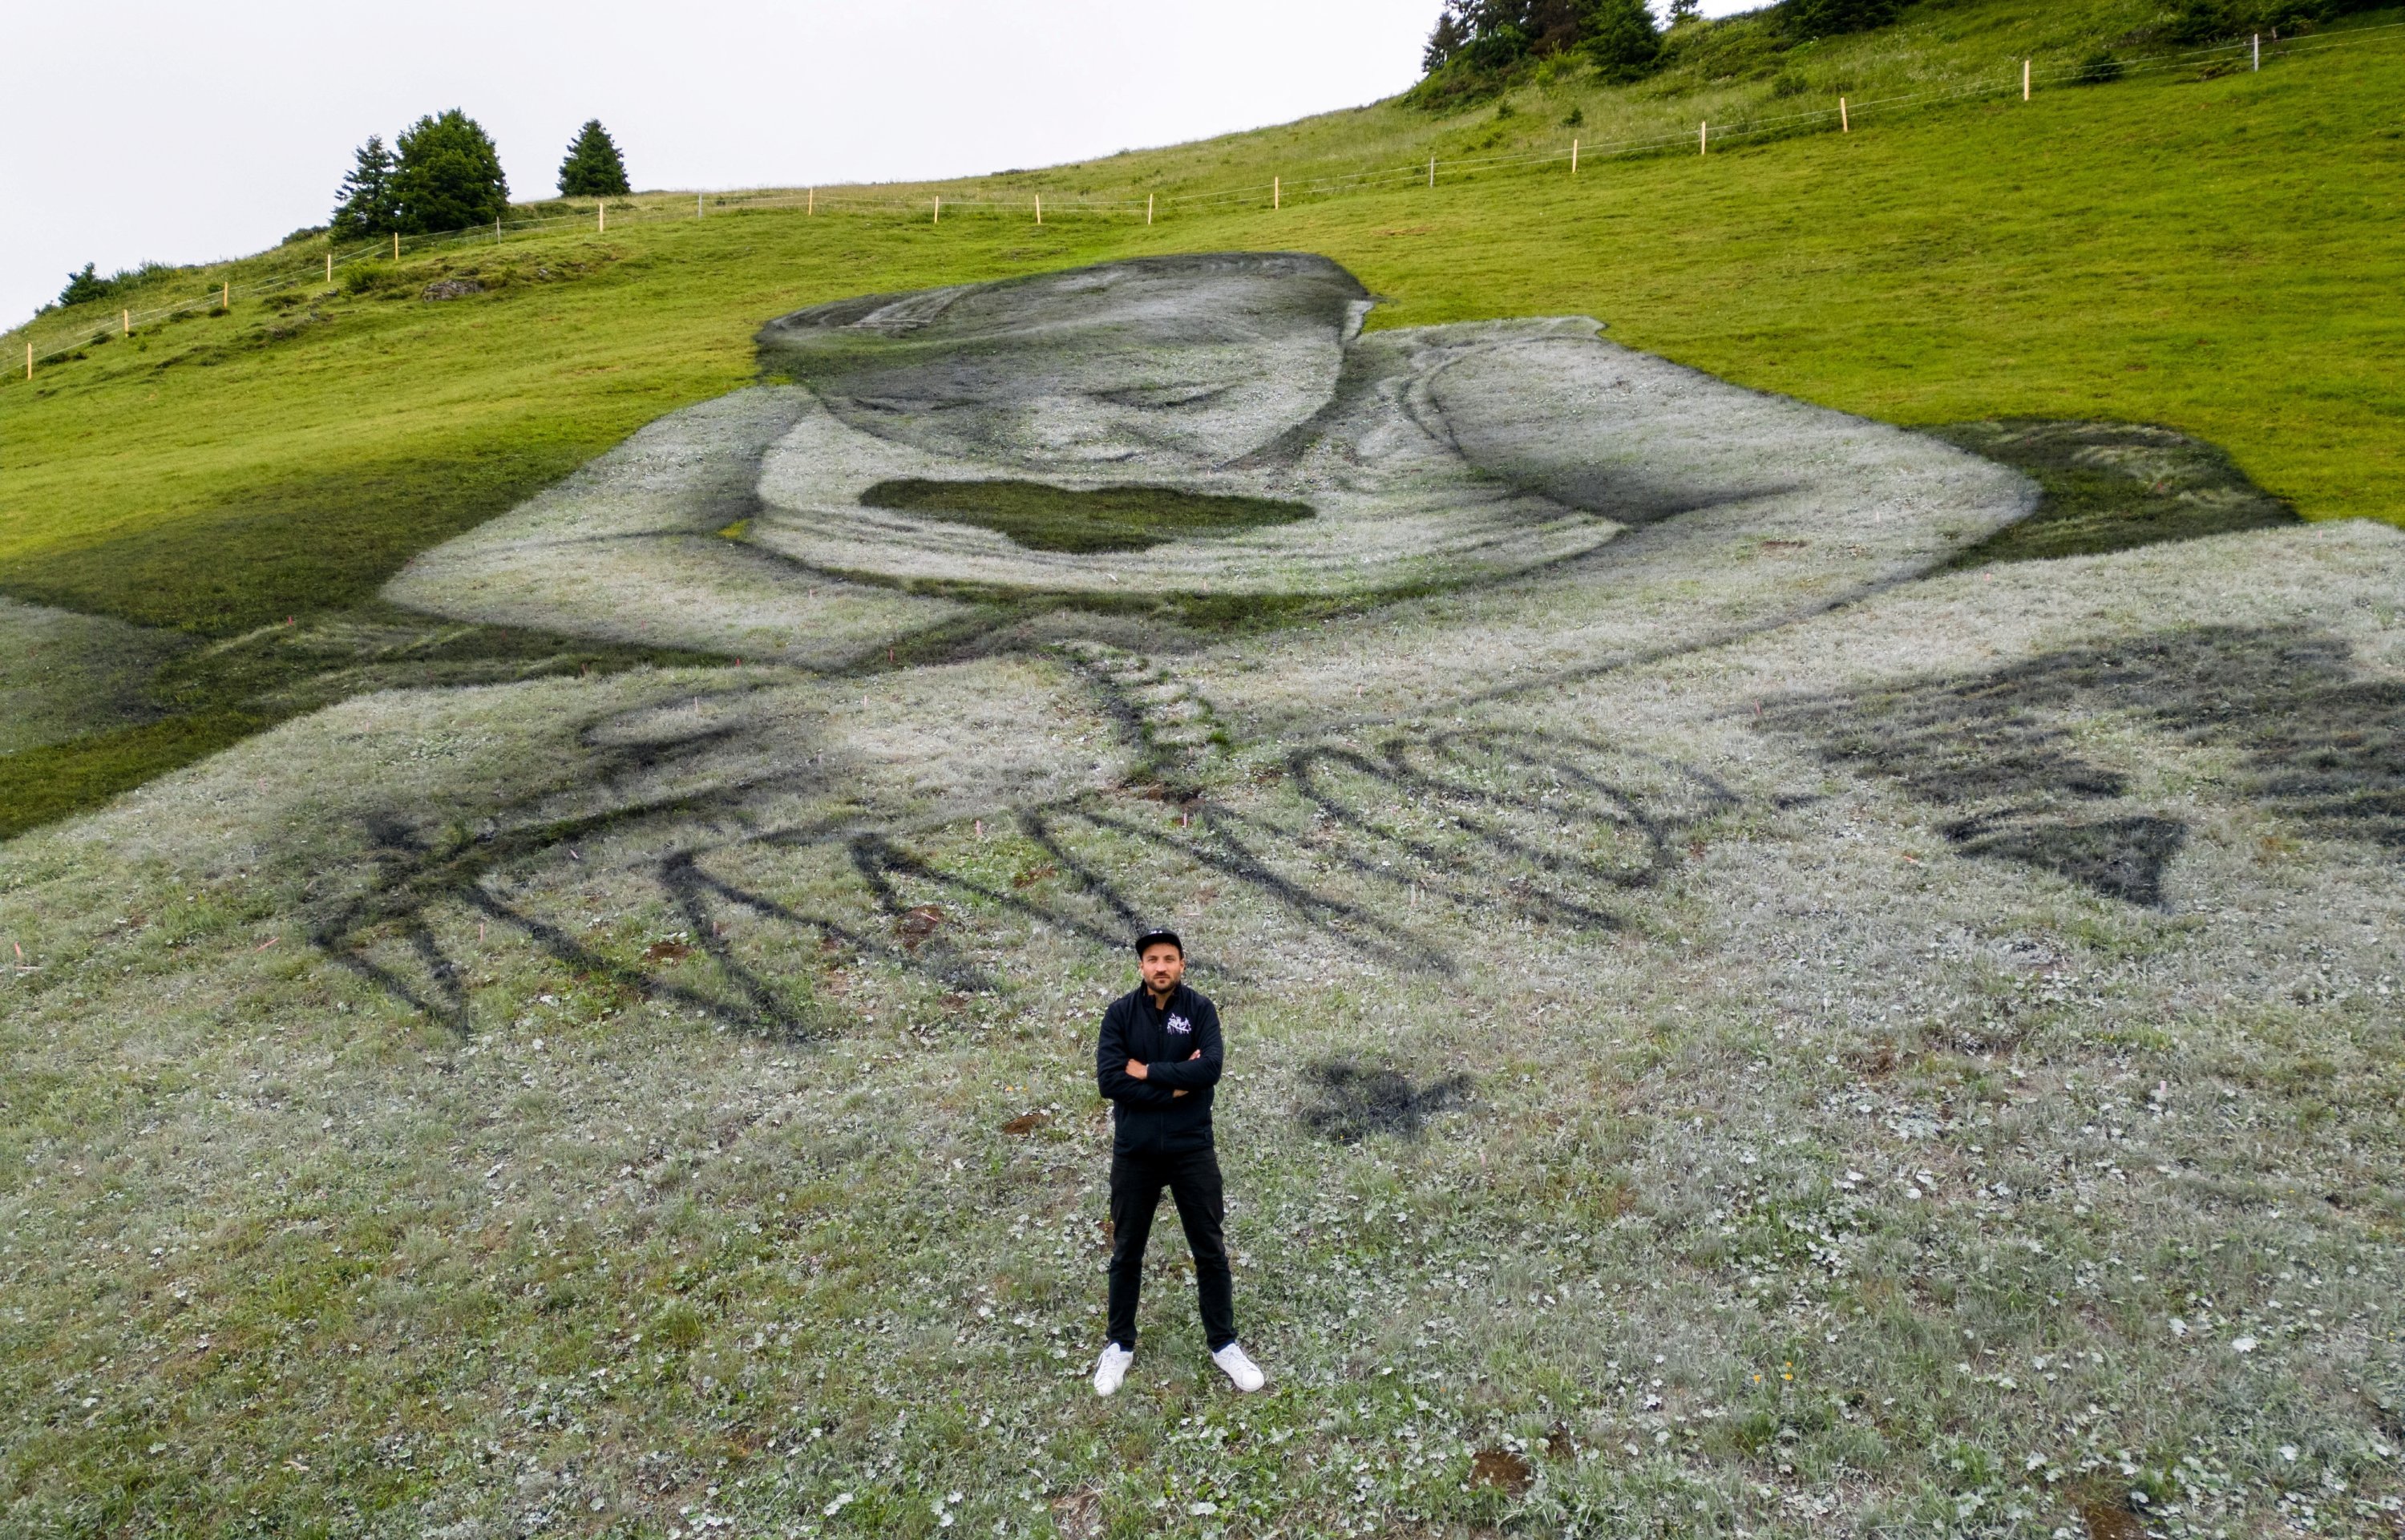 Громадный пишем. Картины в стиле Лэнд-арт. Рисовать склон. Художник, который рисует на склонах гор. Marck швейцарский художник.